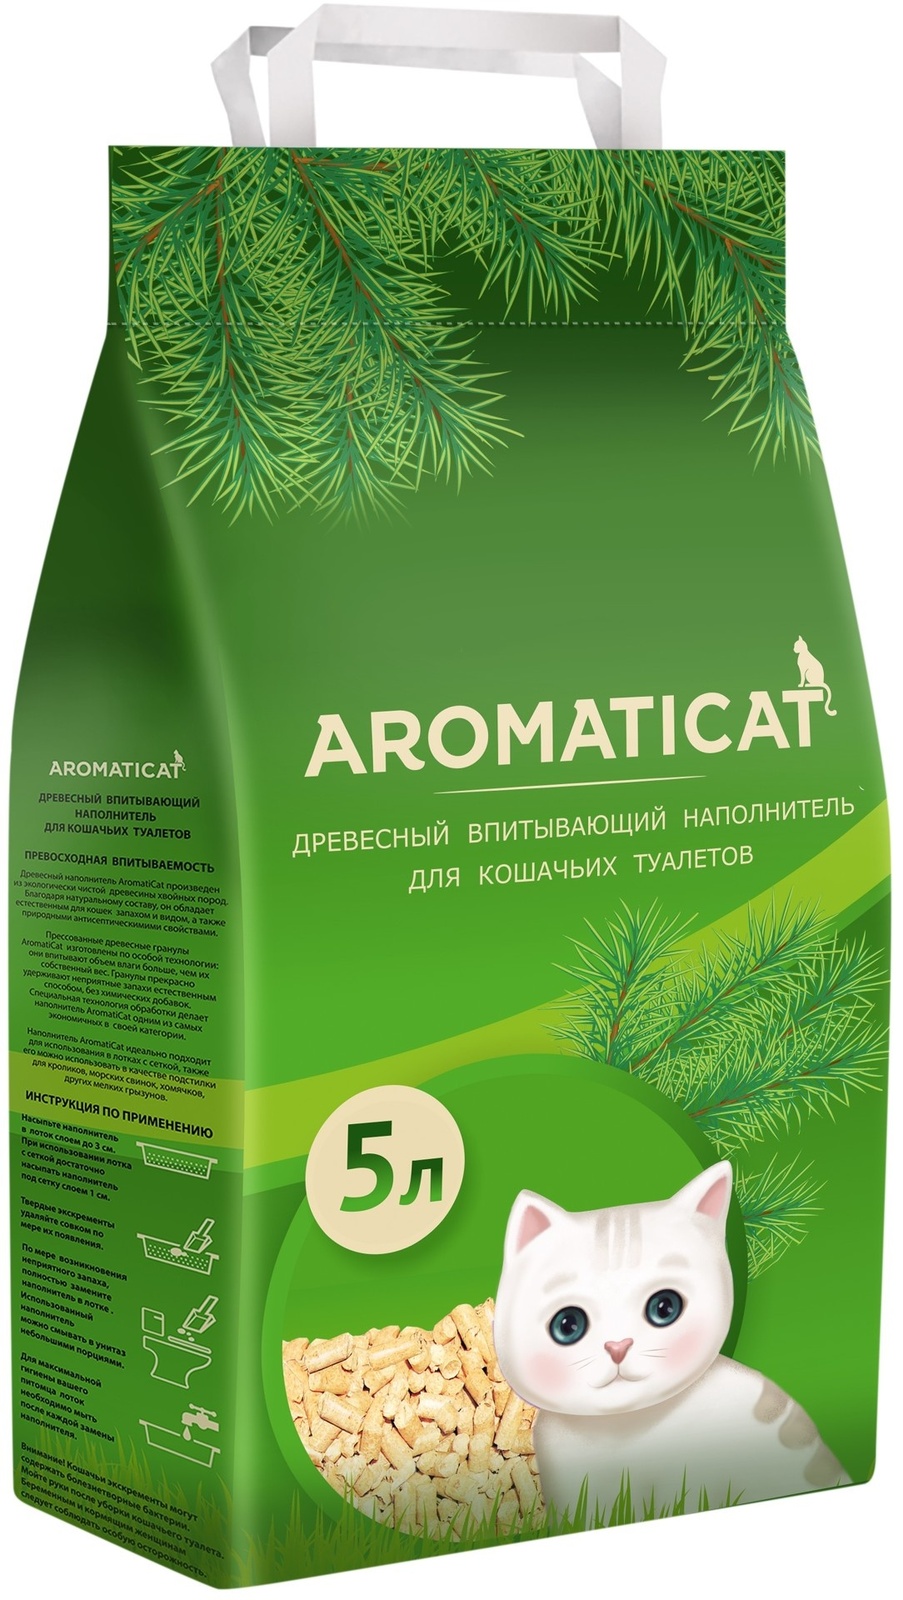 AromatiCat AromatiCat древесный впитывающий наполнитель (3 кг)